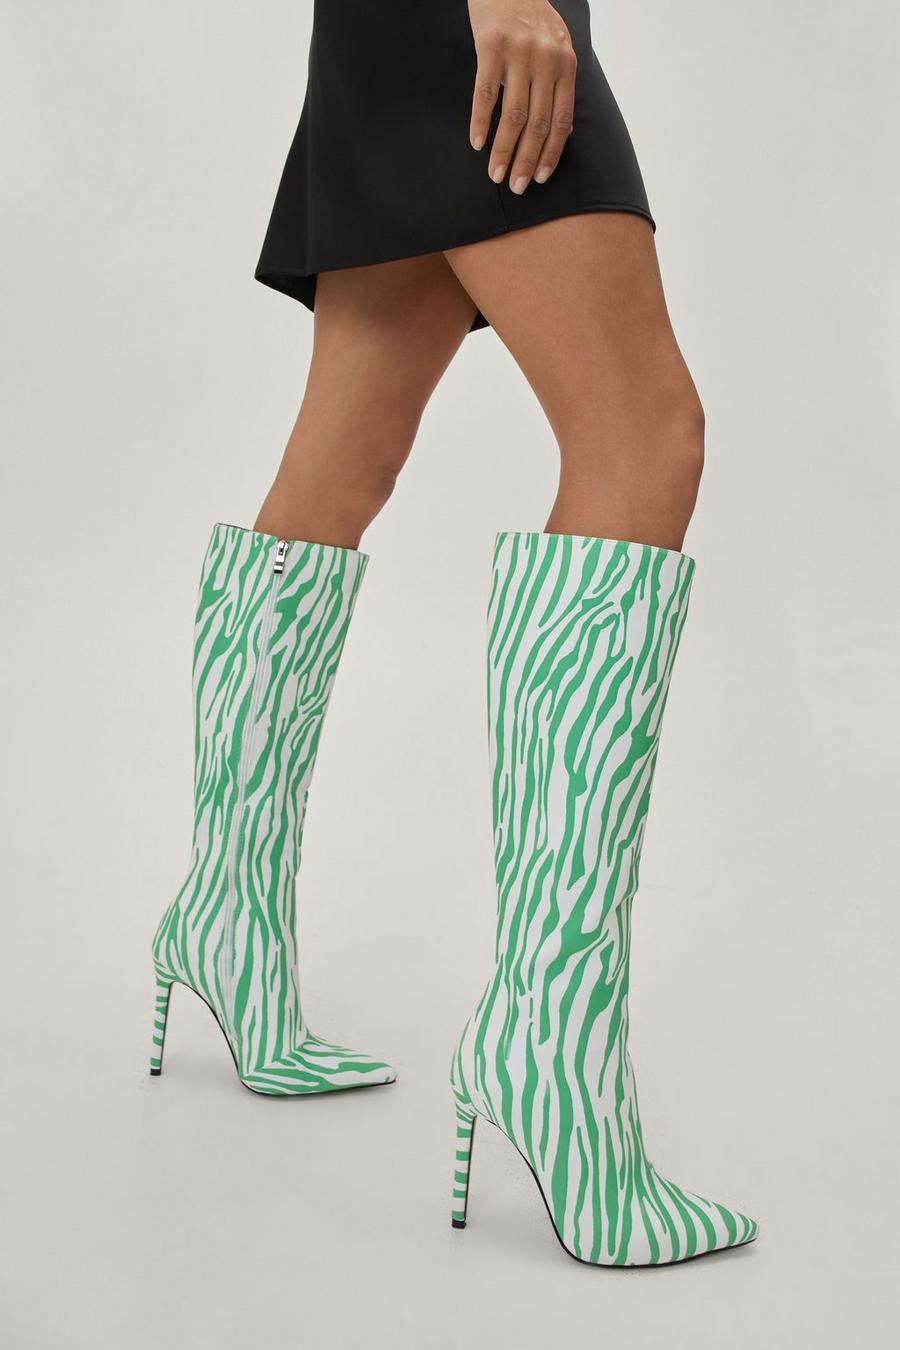 Zebra Print Stiletto Knee High Boots